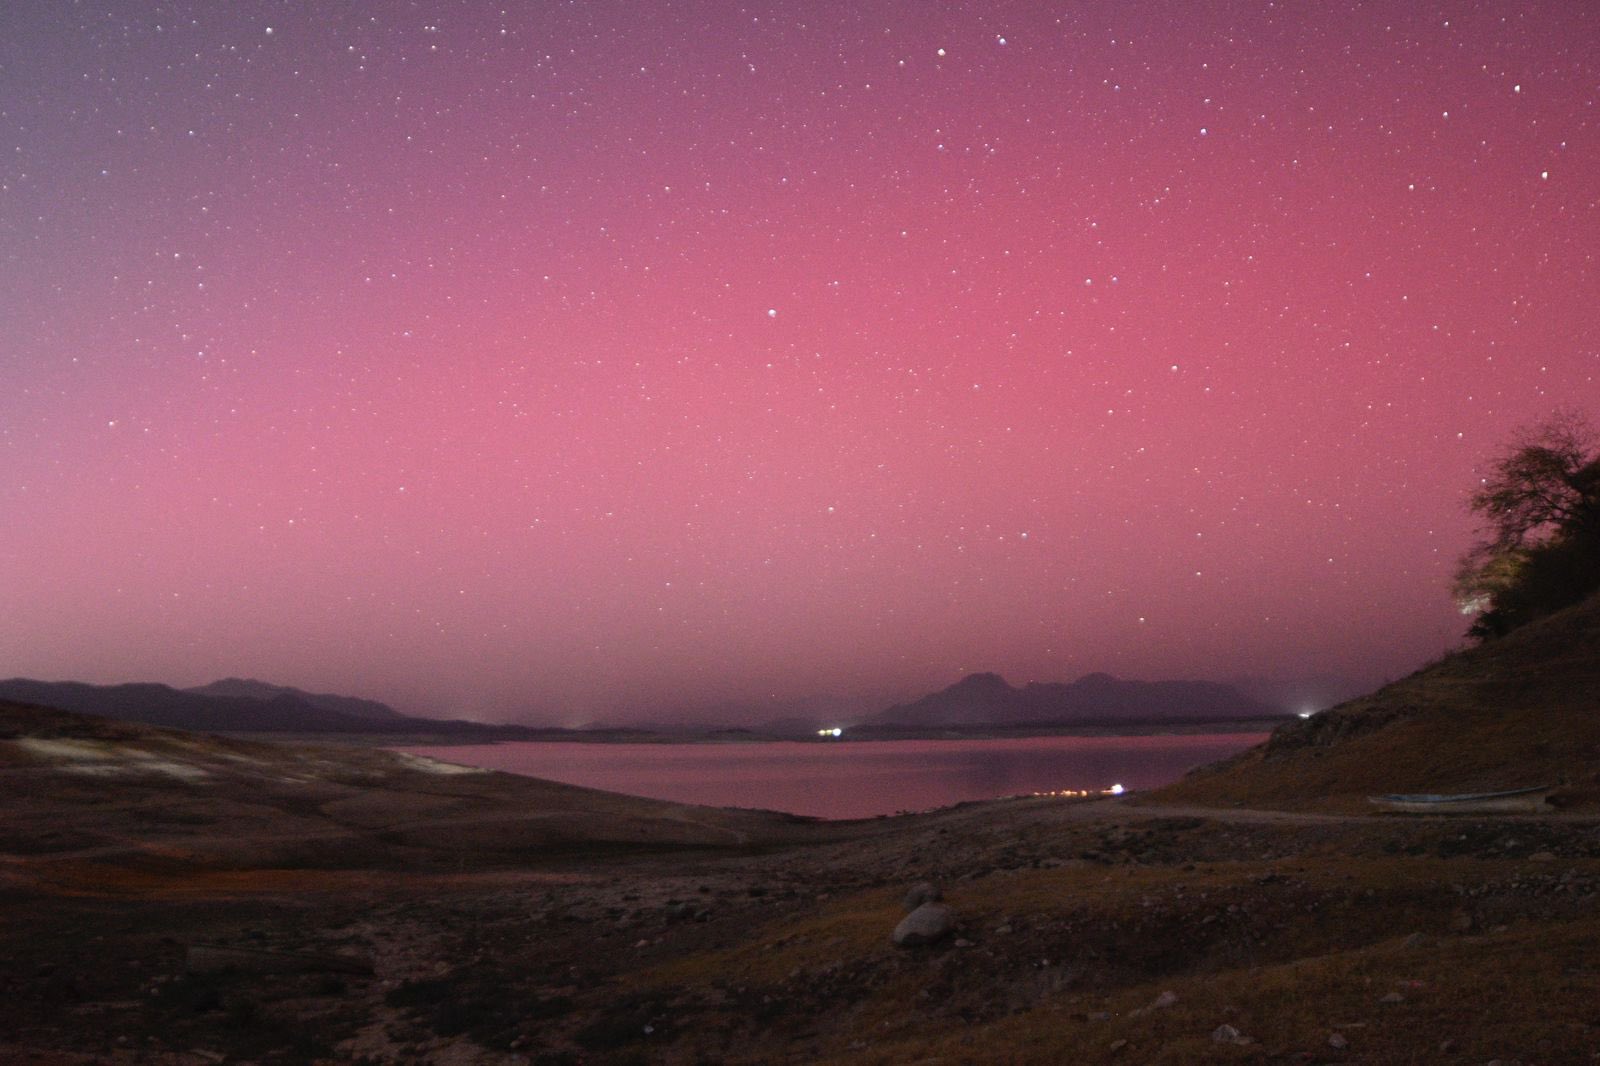 tomar fotos auroras boreales en méxico